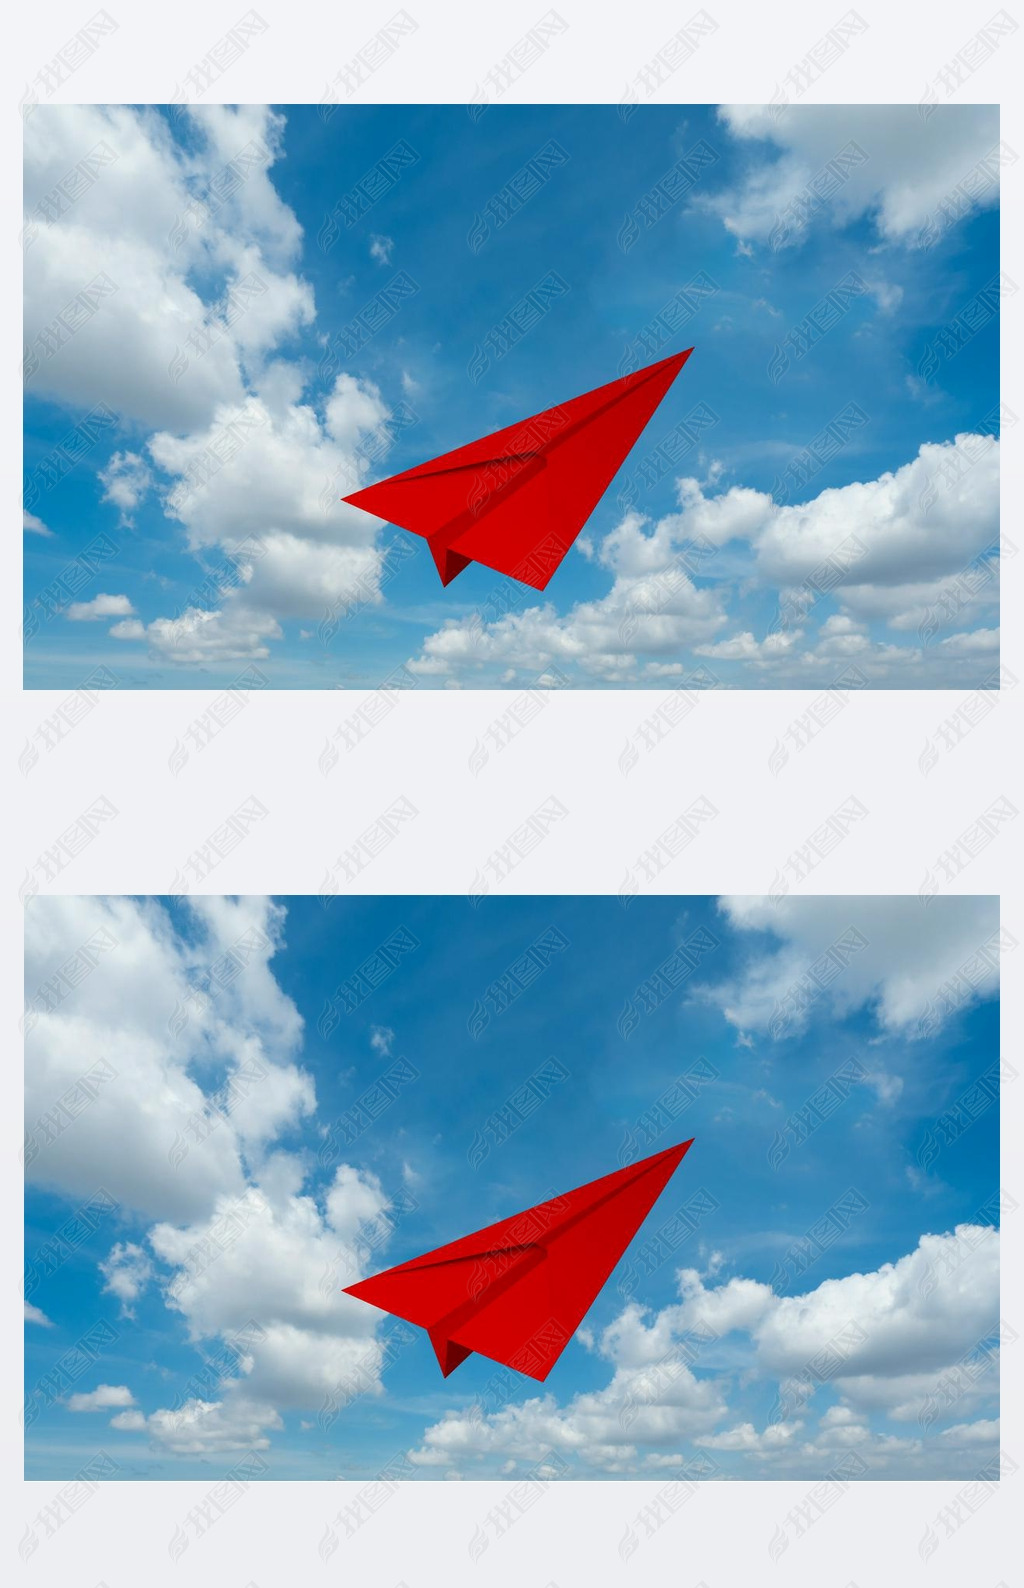 纸飞机免费代理-纸飞机免费代理ip